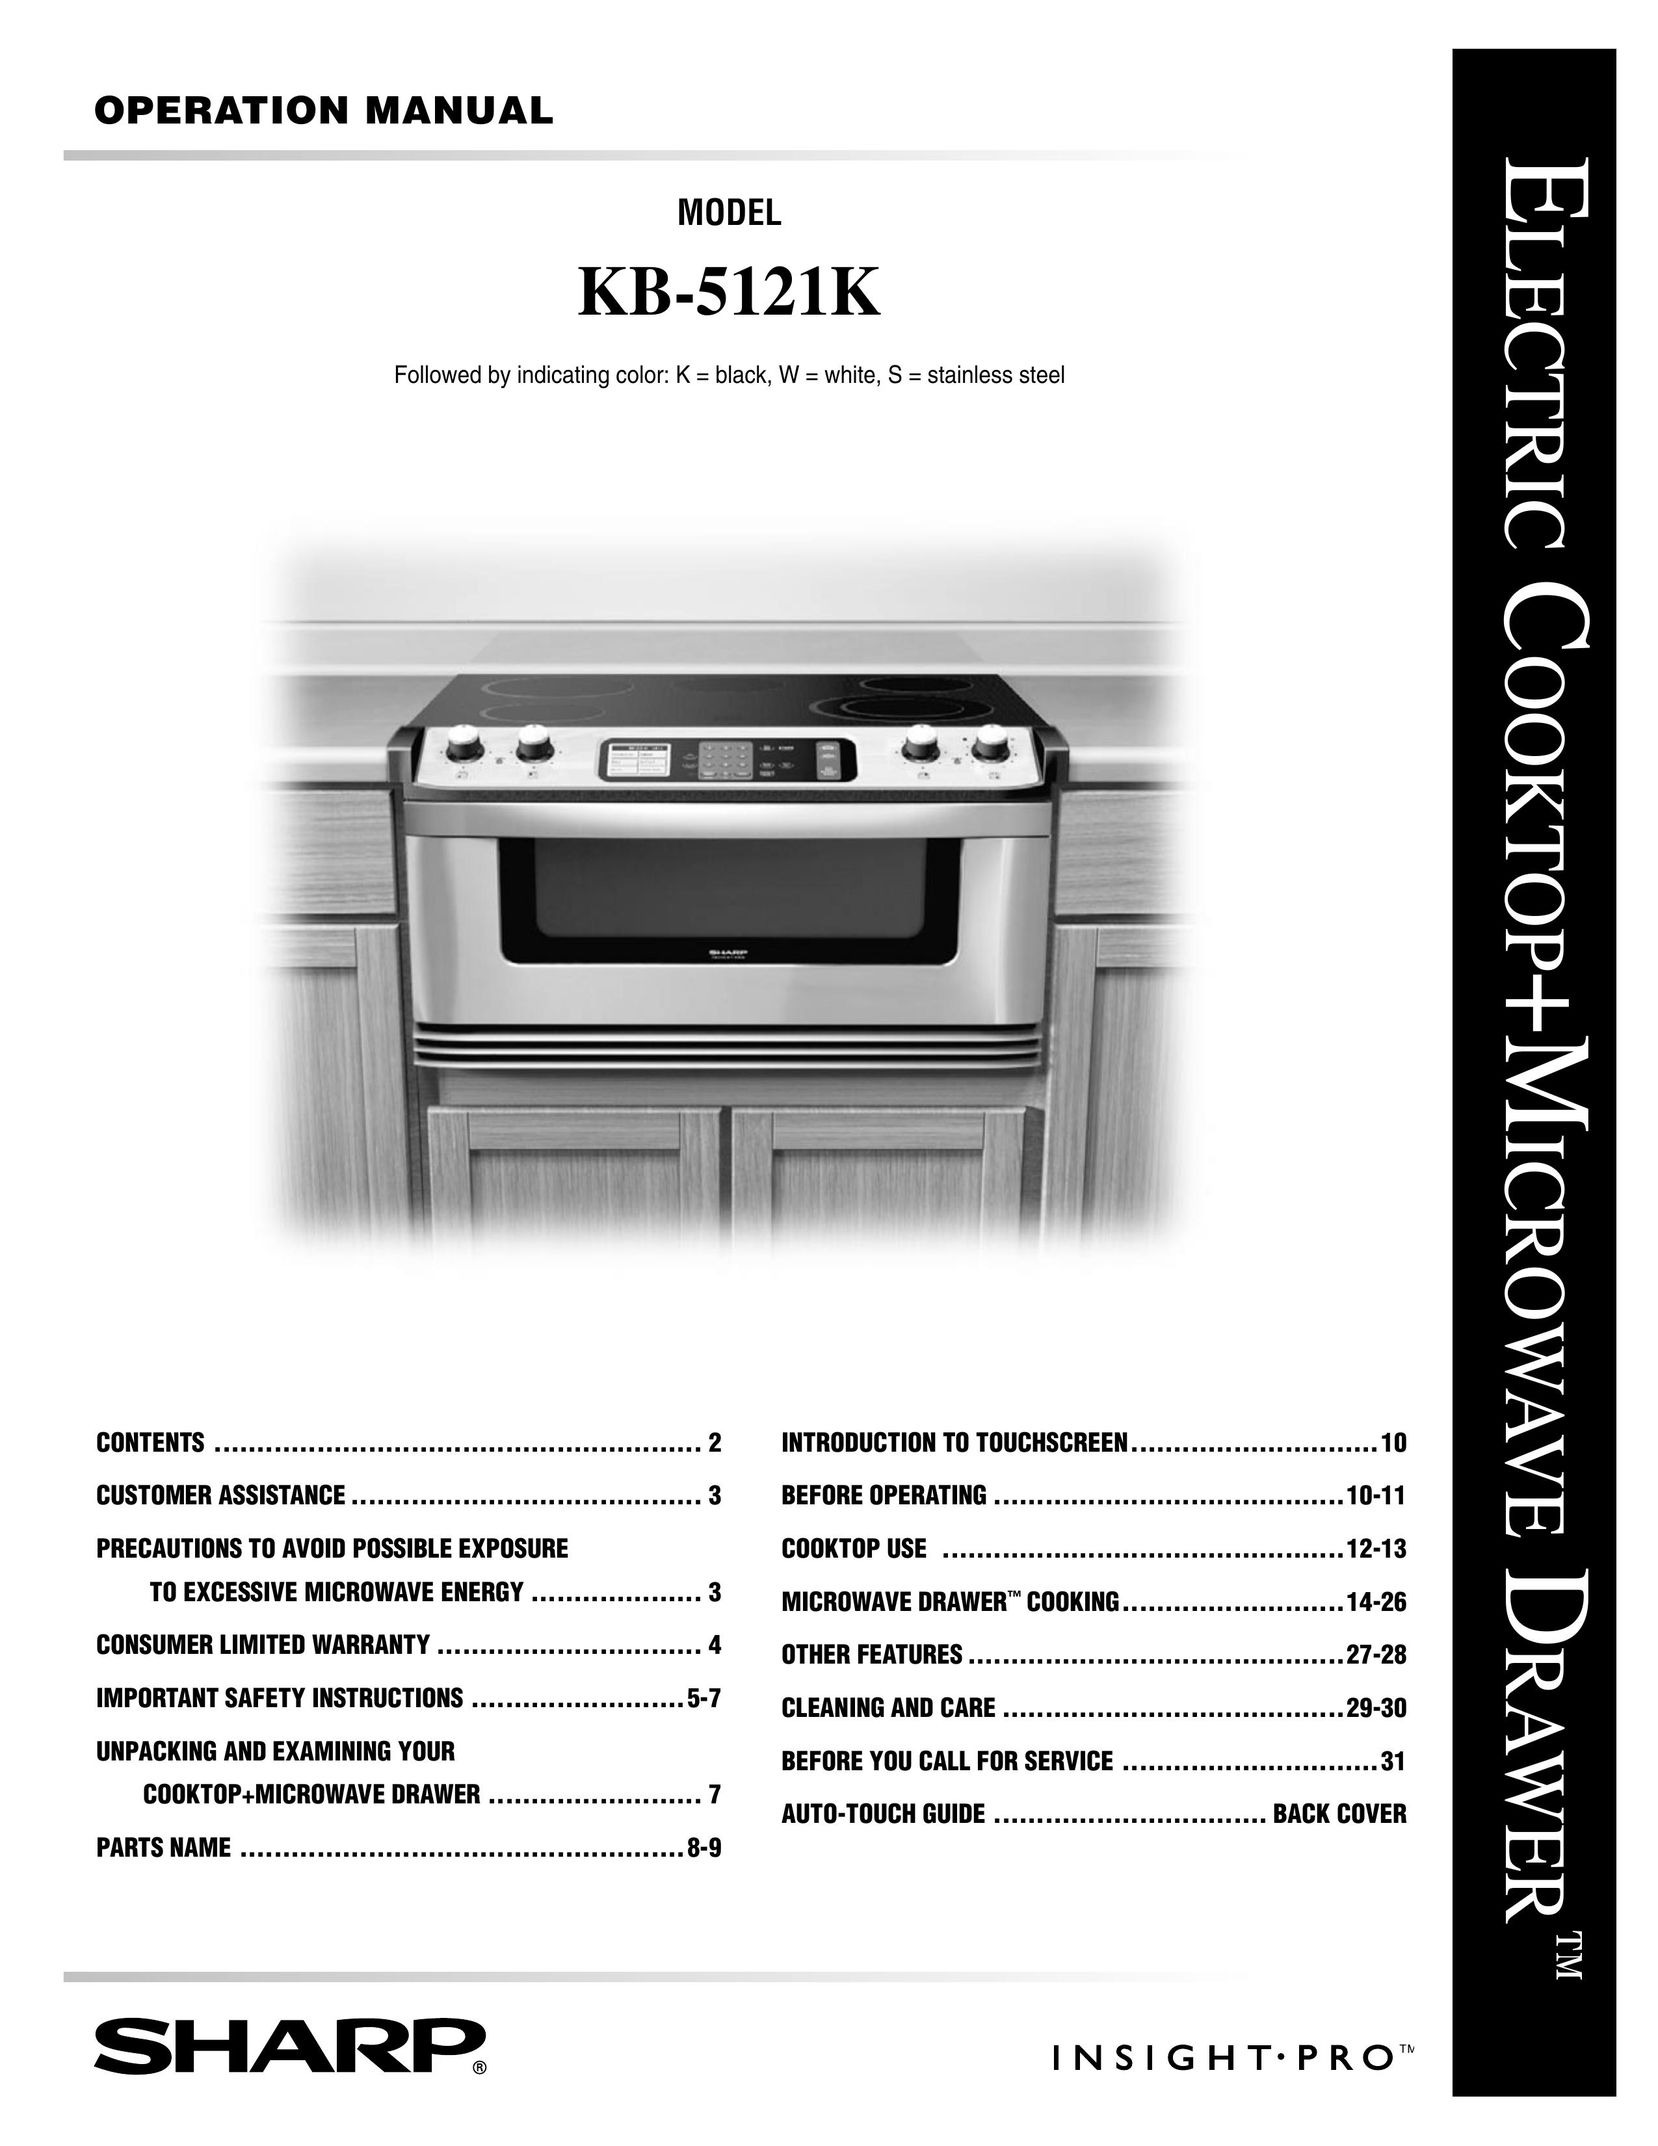 Sharp KB-5121K Cooktop User Manual